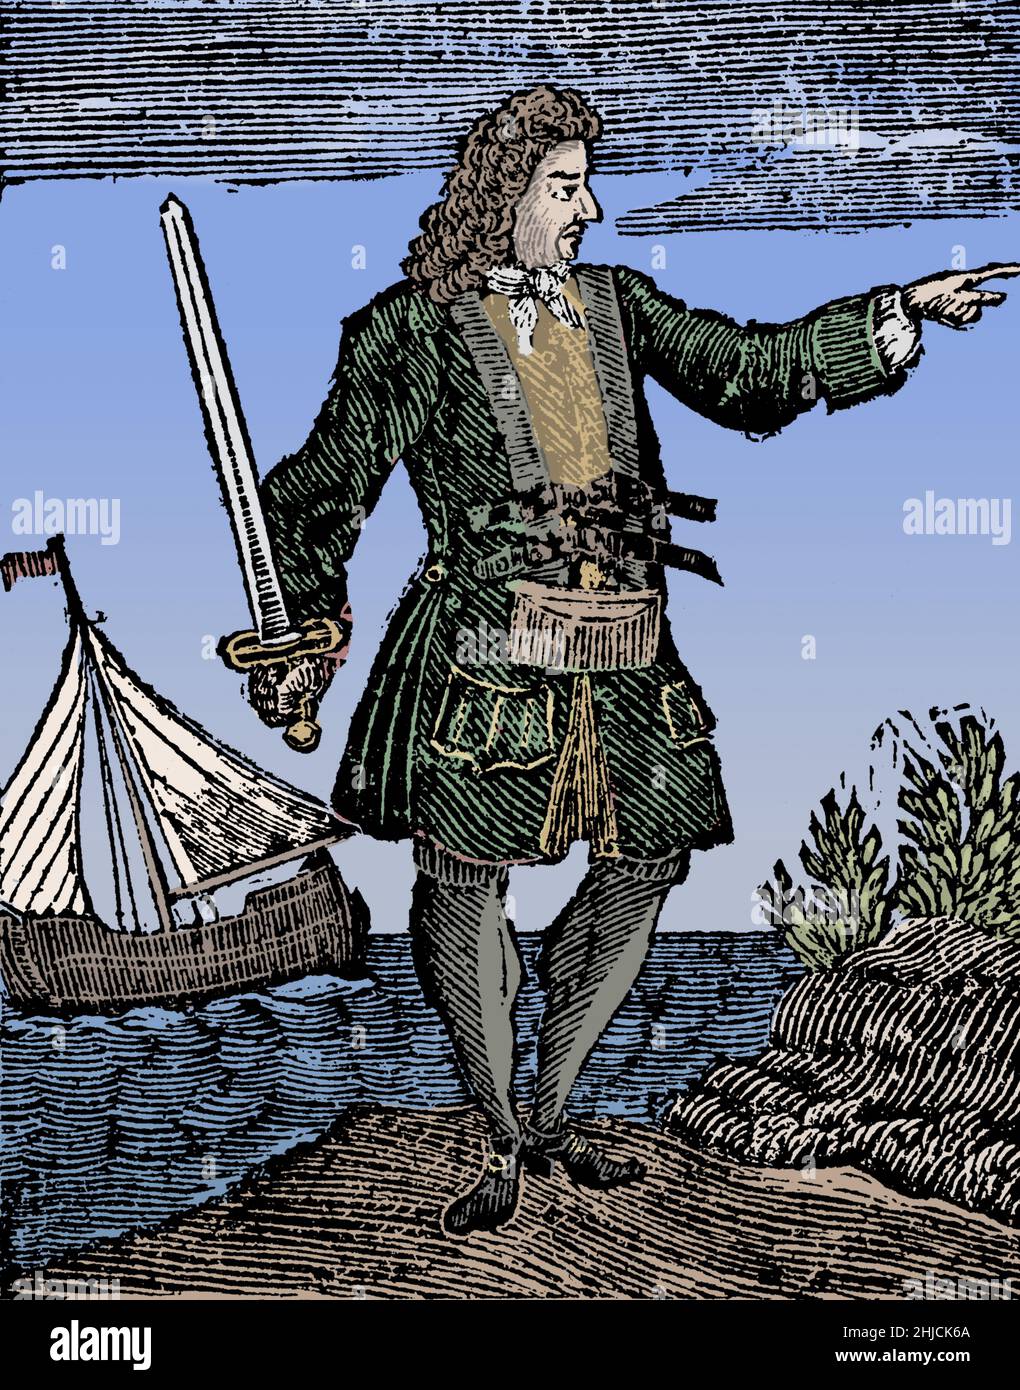 Charles Vane (1680 - 29. März 1721) war ein englischer Pirat, der von der berüchtigten Basis in New Providence auf den Bahamas aus operierte. Seine Fähigkeiten im Navigieren und im Schiffskampf waren unübertrefflich, und er plündert erfolgreich zahlreiche Schiffe. Während seiner Arbeit zwischen Kuba und Hispaniola beschuldigte ihn seine Mannschaft der Feigheit und er wurde mit einem kleinen Schleier und einigen loyalen Piraten zurückgelassen. Er eroberte mehrere Schiffe und baute seine Piratenflotte wieder auf, aber ein Hurrikan zerstörte die meisten von ihnen und fast seine gesamte Besatzung ertrank. Schließlich wurde er gefangen genommen, eingesperrt, vor Gericht gestellt, für schuldig befunden und gehängt. Eingefärbt. Stockfoto